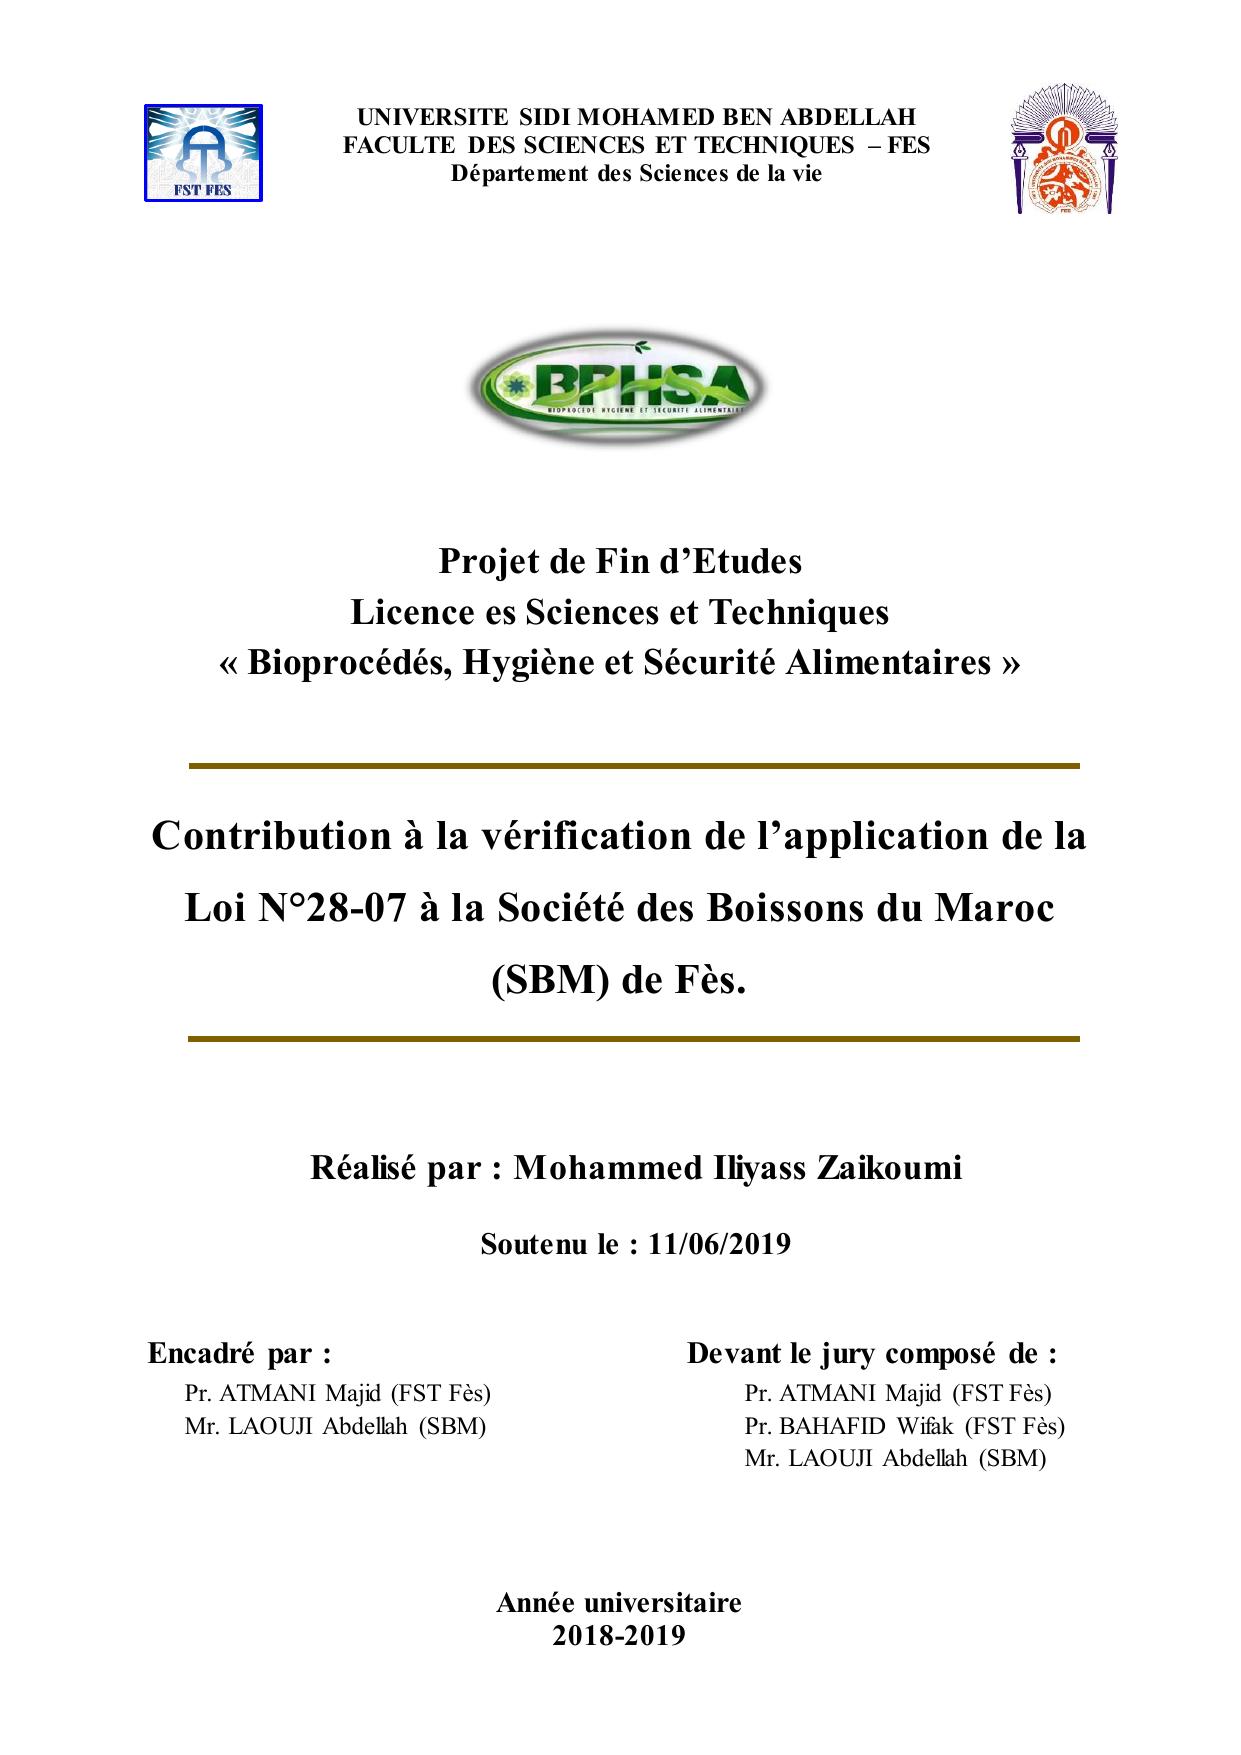 Contribution à la vérification de l’application de la Loi N°28-07 à la Société des Boissons du Maroc (SBM) de Fès.